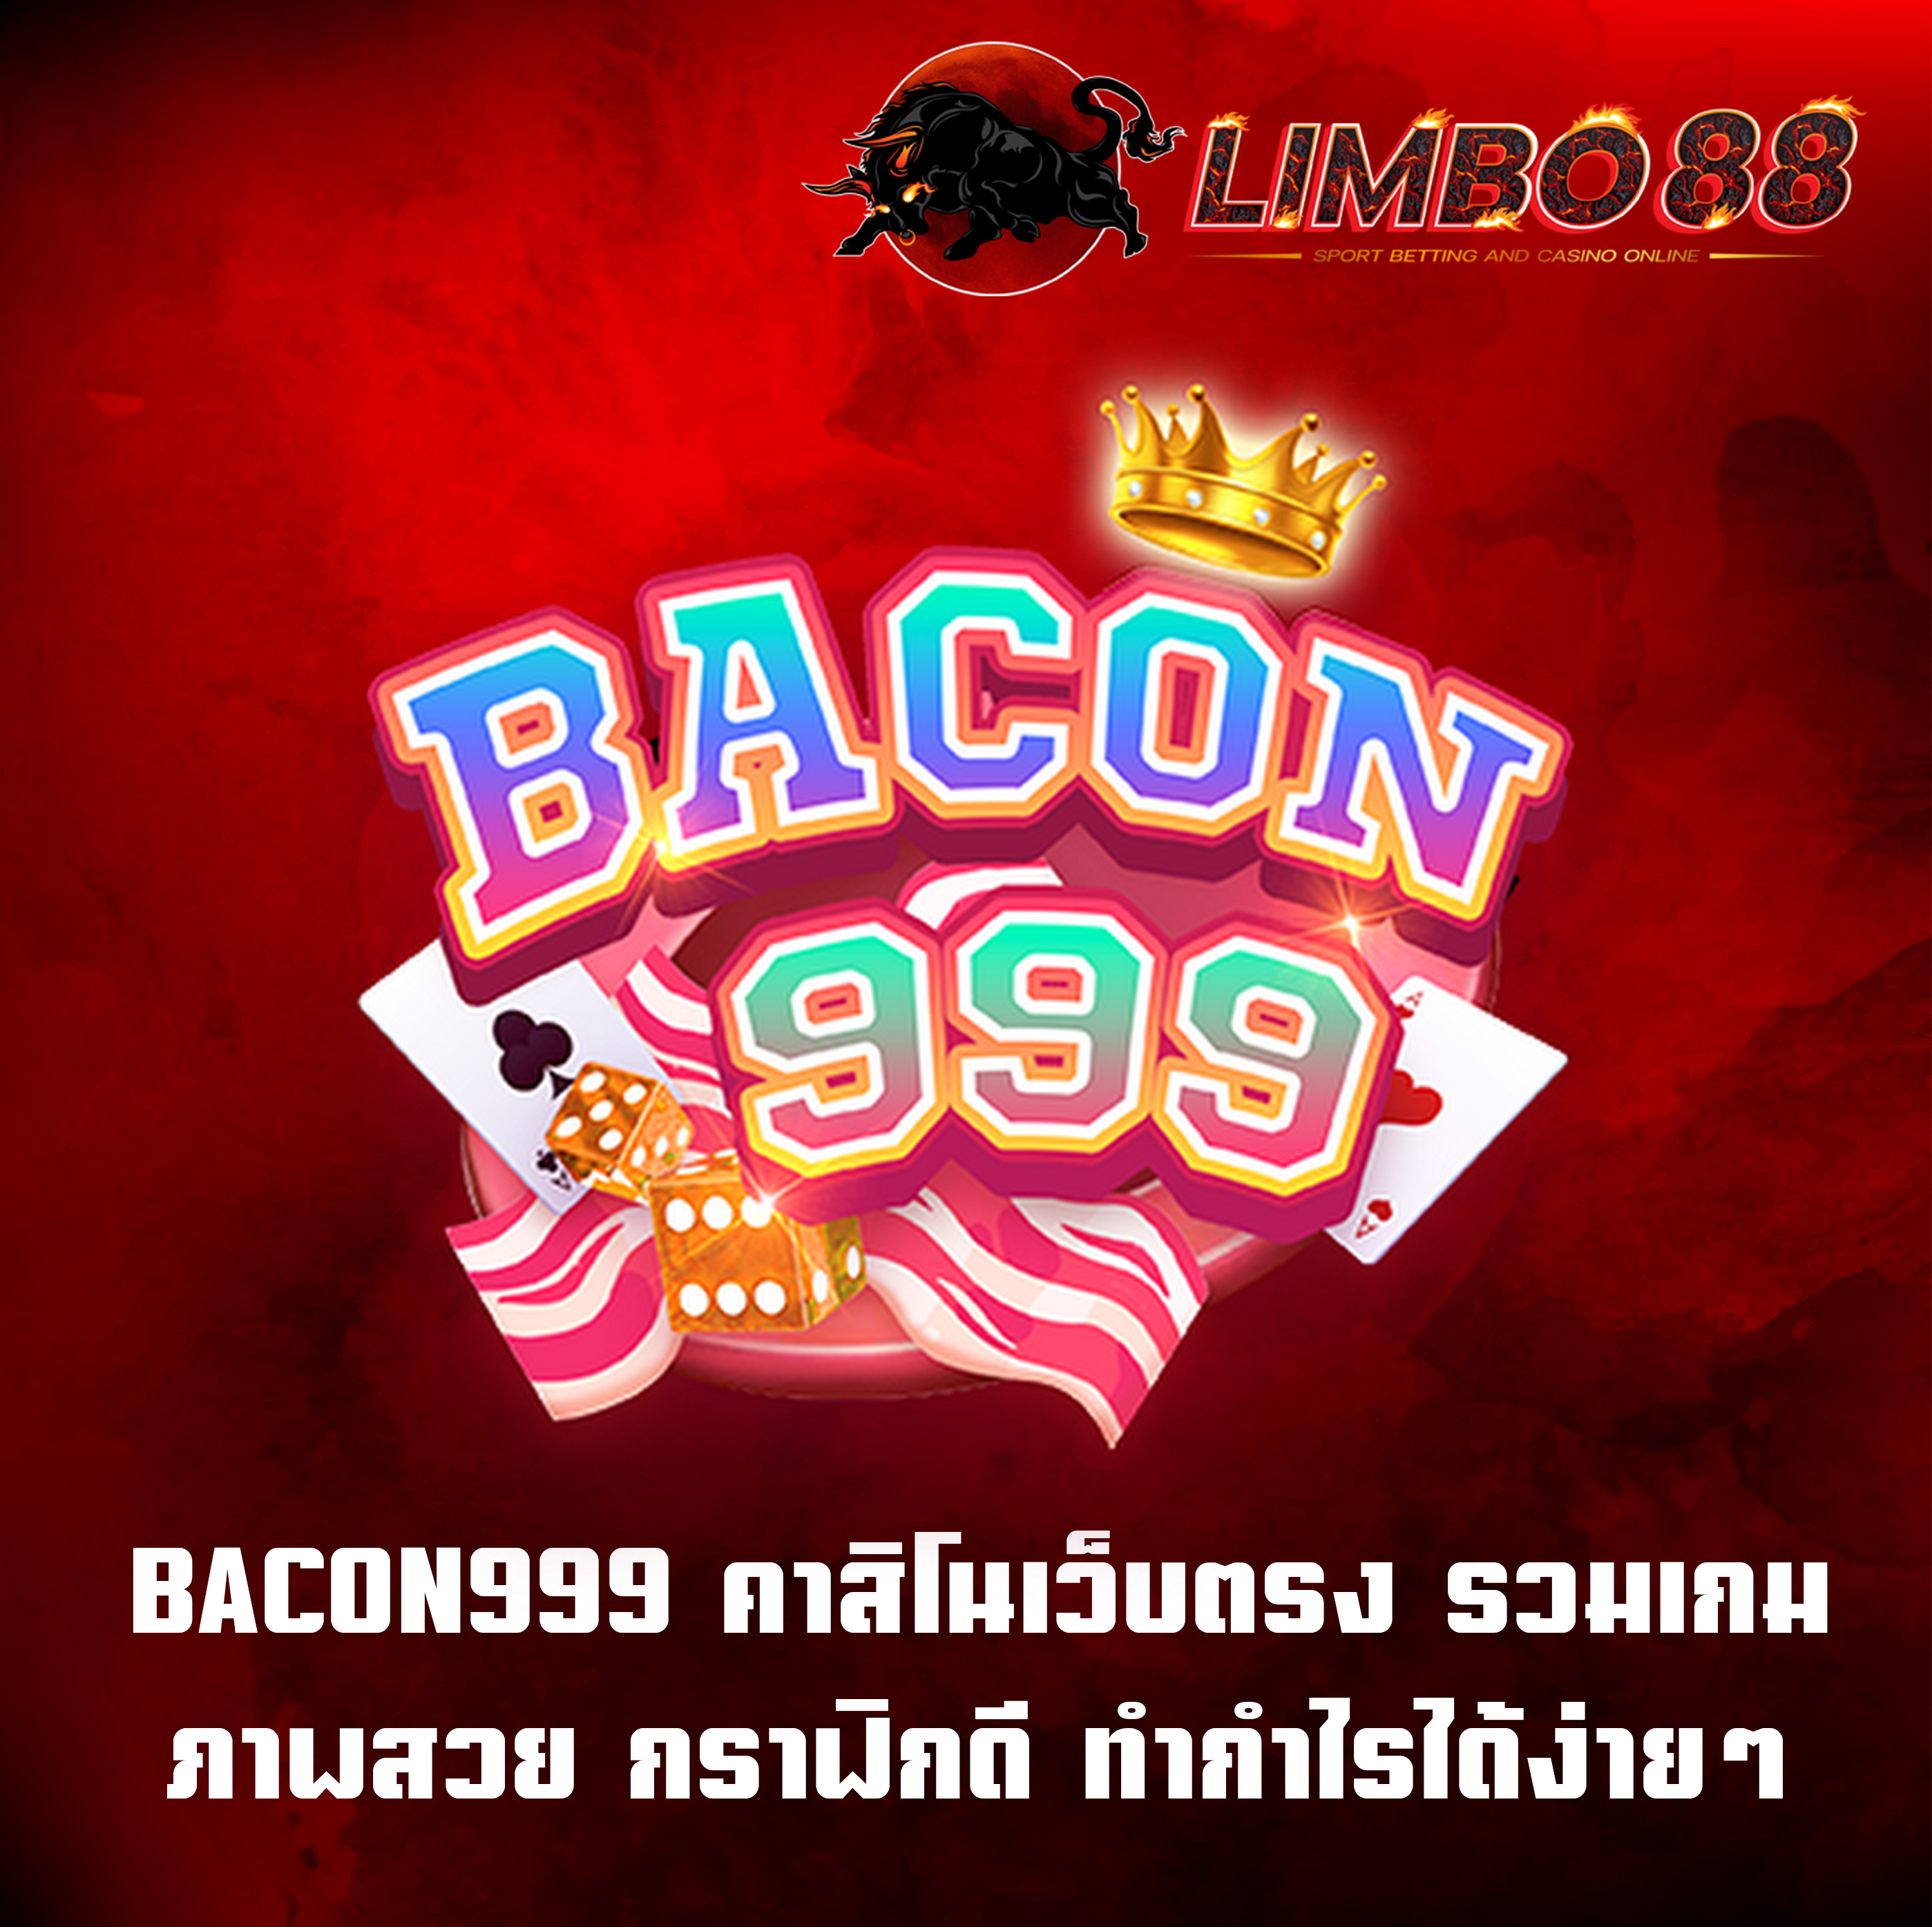 BACON999